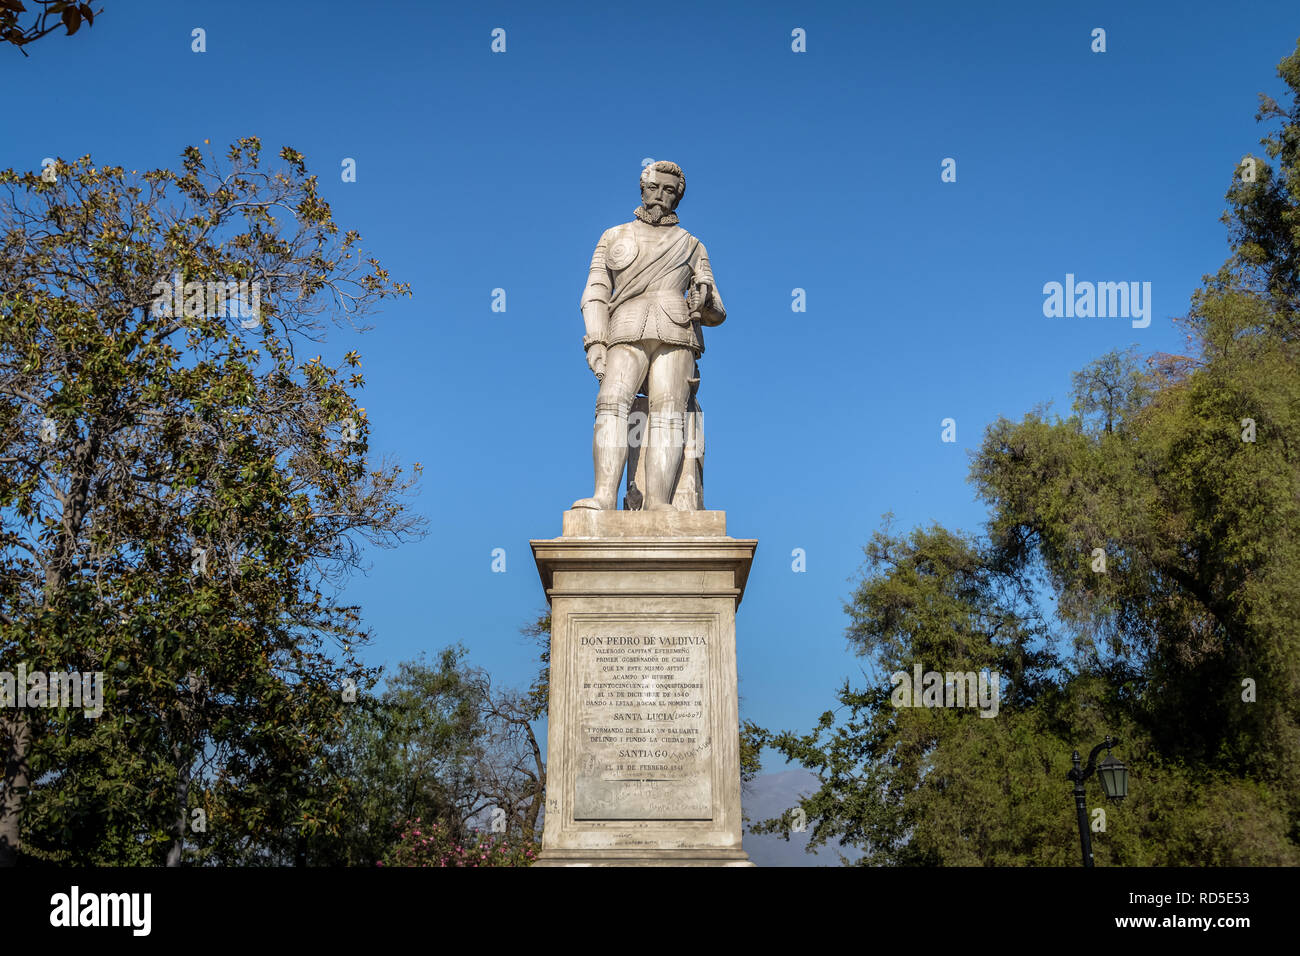 Statue of Pedro de Valdivia, founder of Santiago city, at Valdivia Square in Santa Lucia Hill - Santiago, Chile Stock Photo